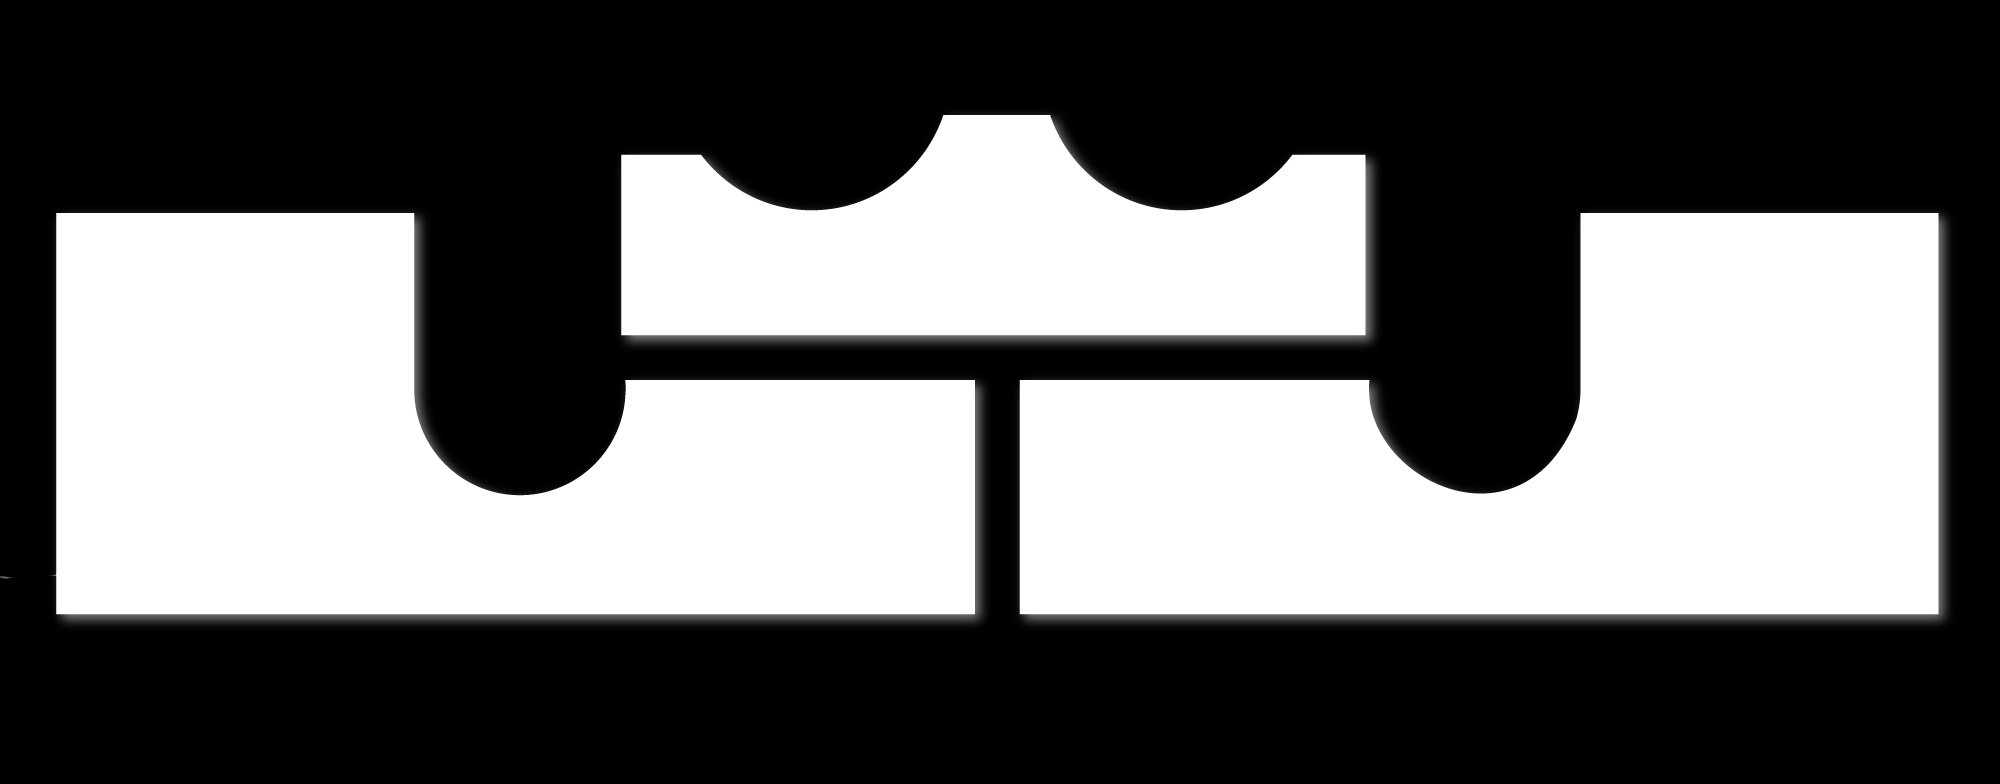 king lebron logo